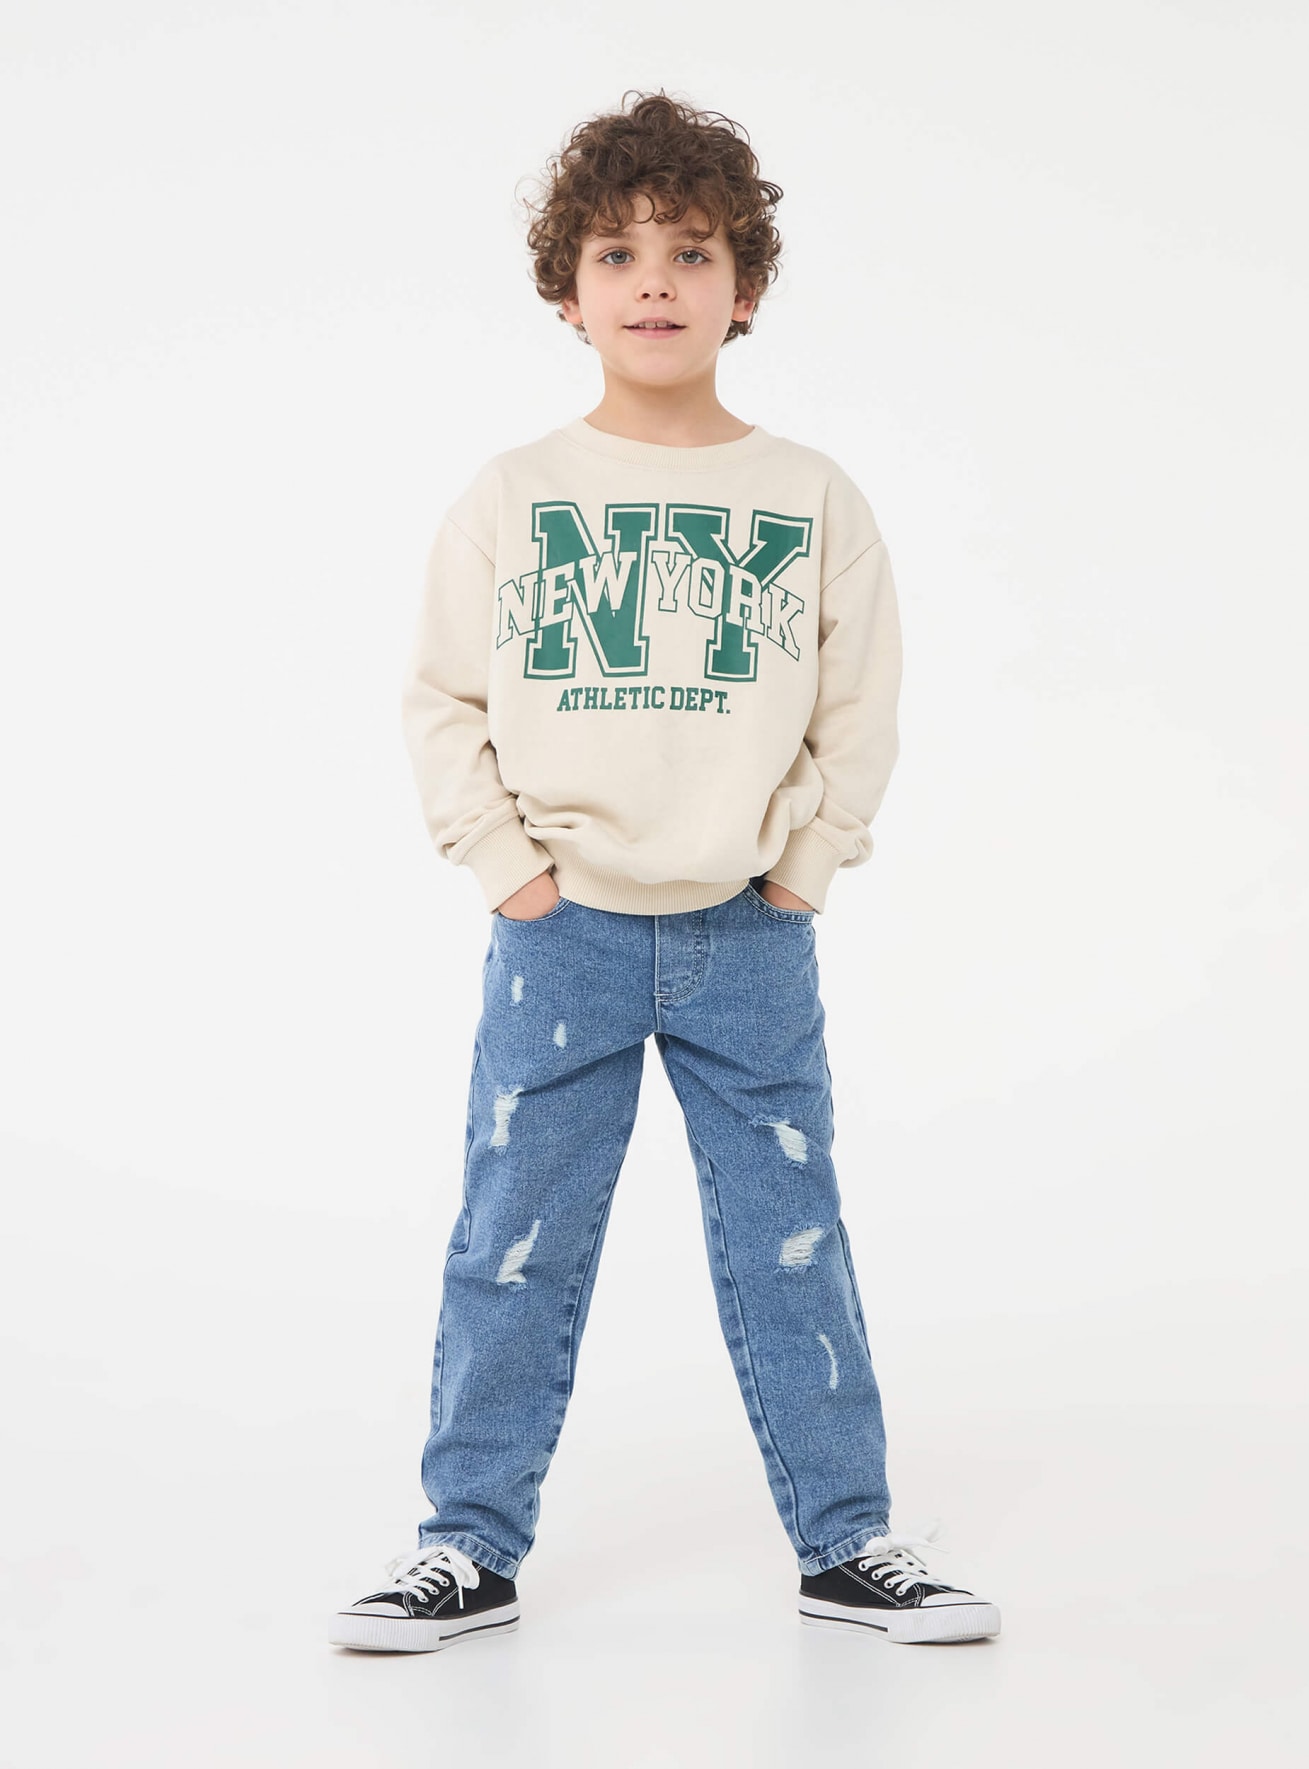 Jean garçon enfant 4 ans - Vente en ligne de jeans pour les